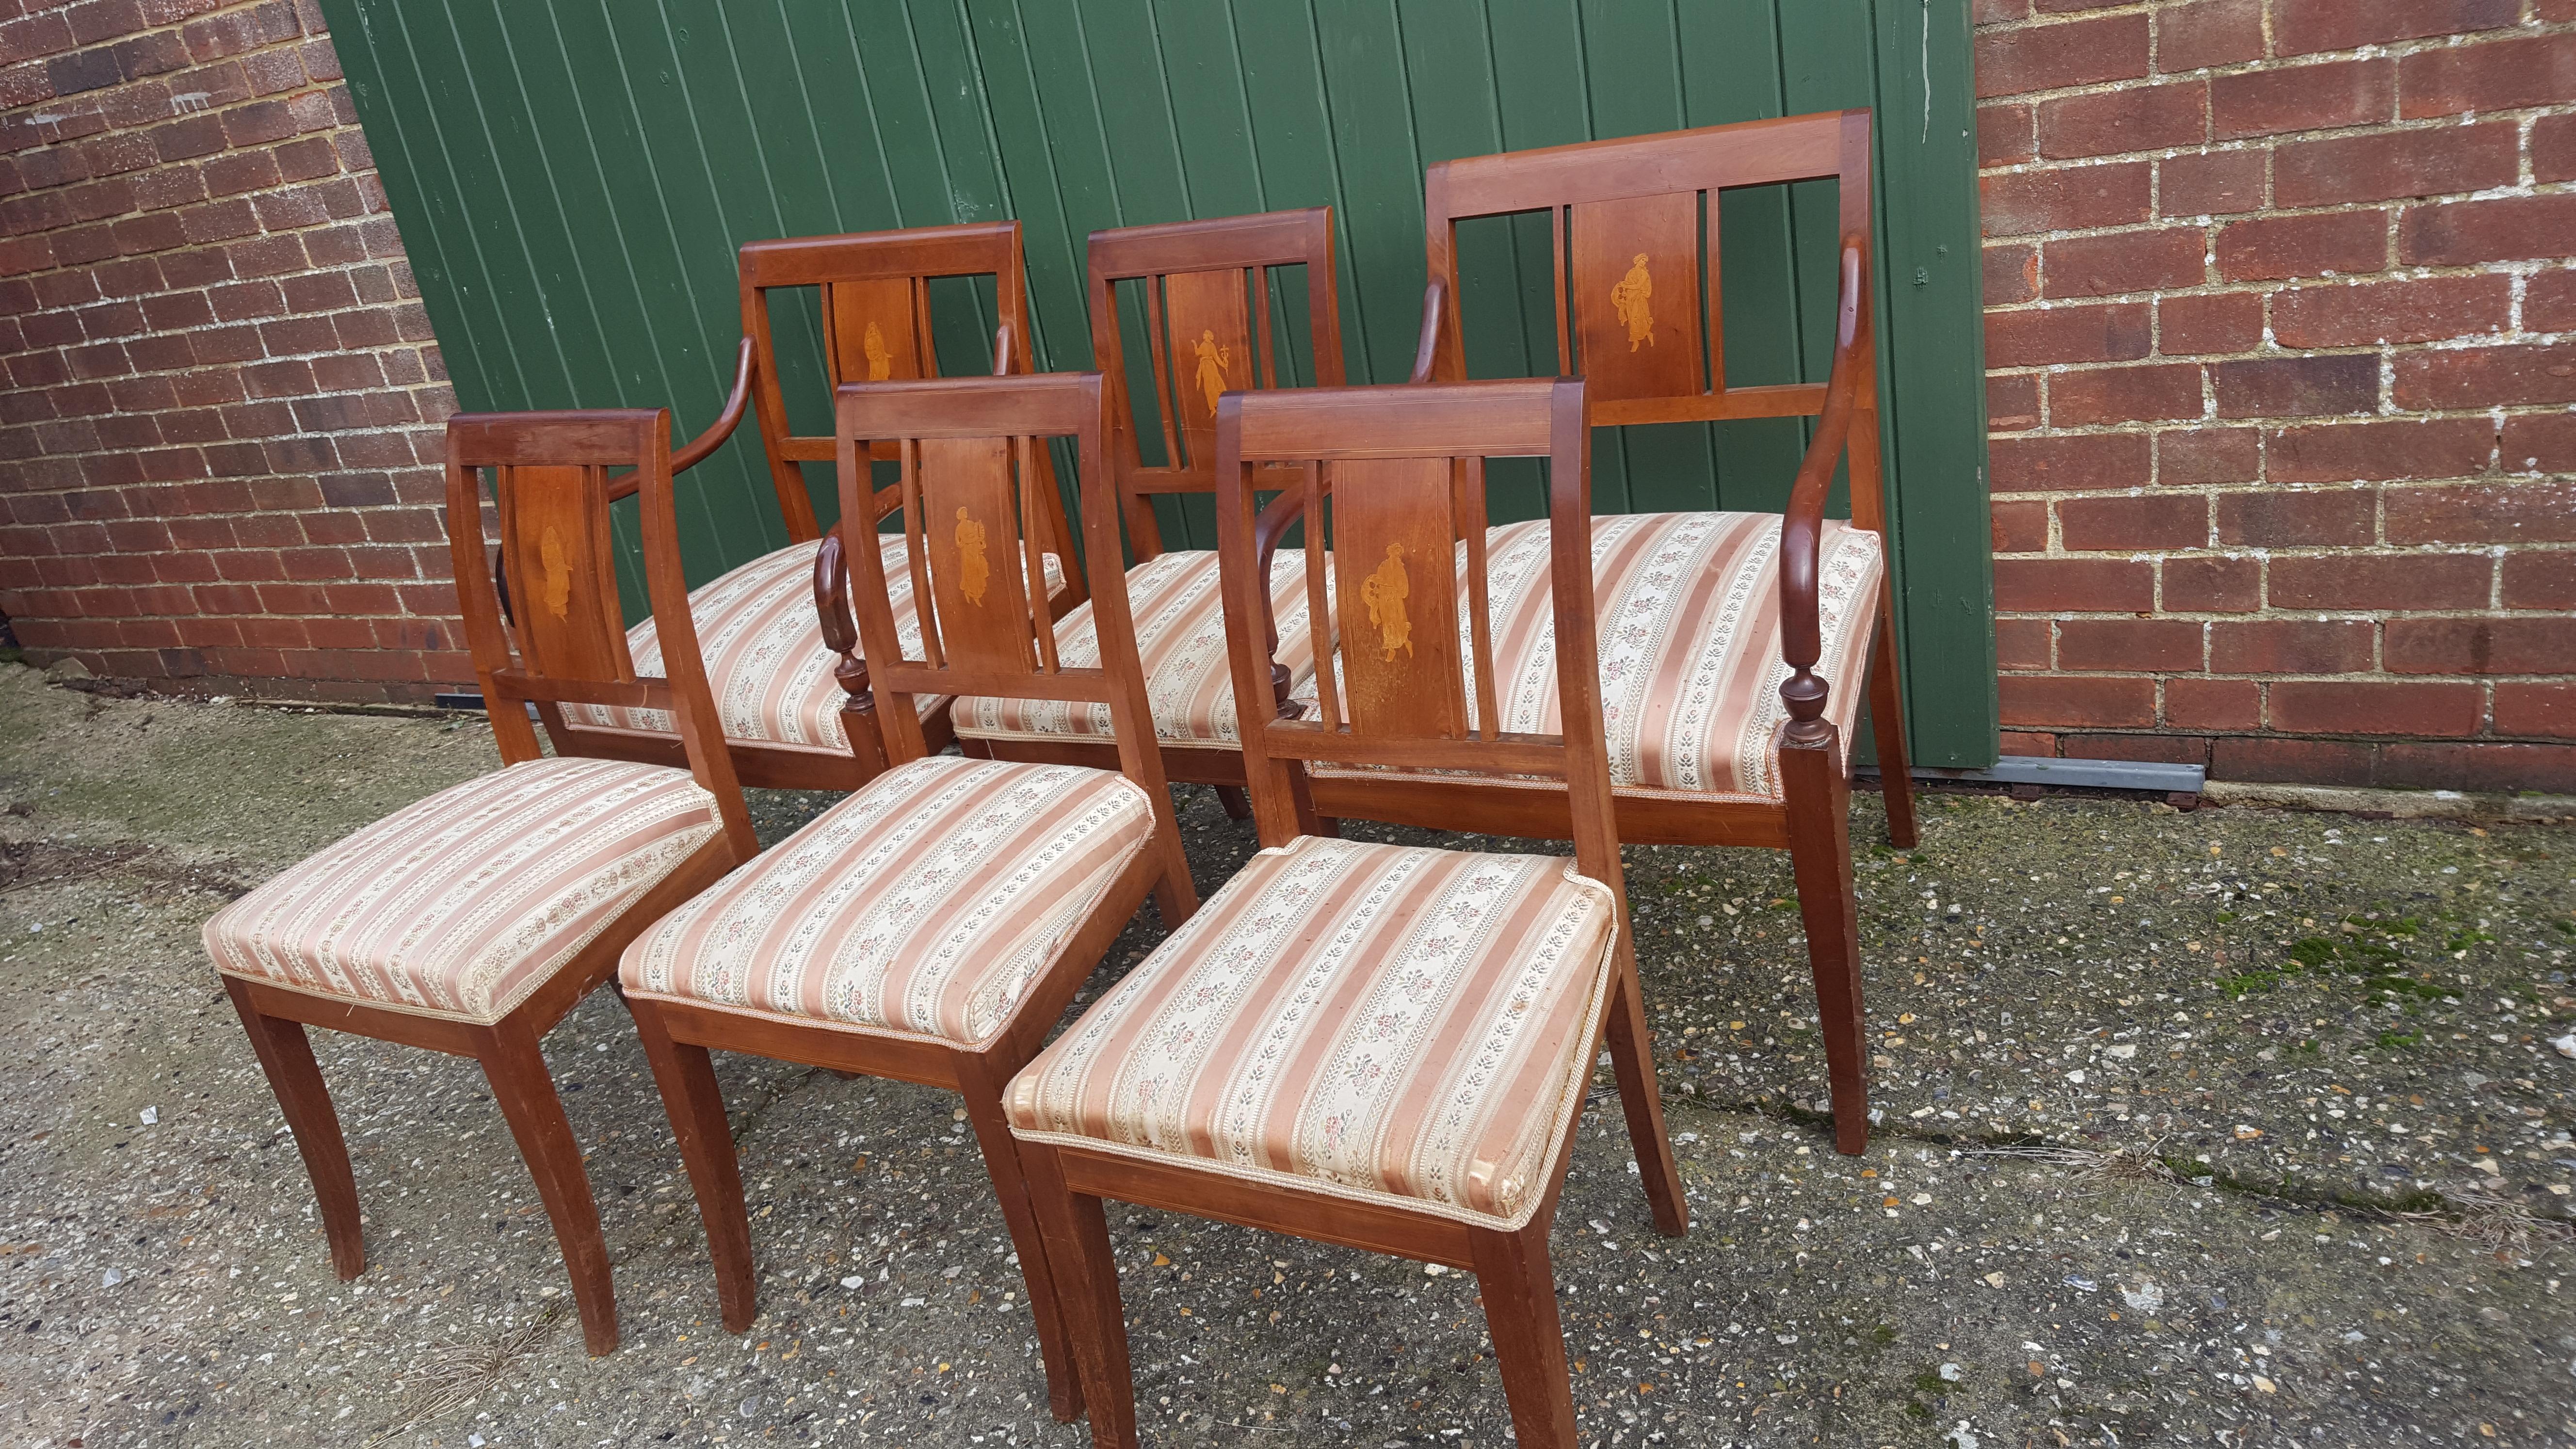 Ensemble de 6 chaises de salle à manger Art déco suédois anciennes en bouleau doré avec dossiers avec incrustations avec de magnifiques figures féminines en marqueterie fine.

Les placages ondés de qualité supérieure sont mis en valeur par une